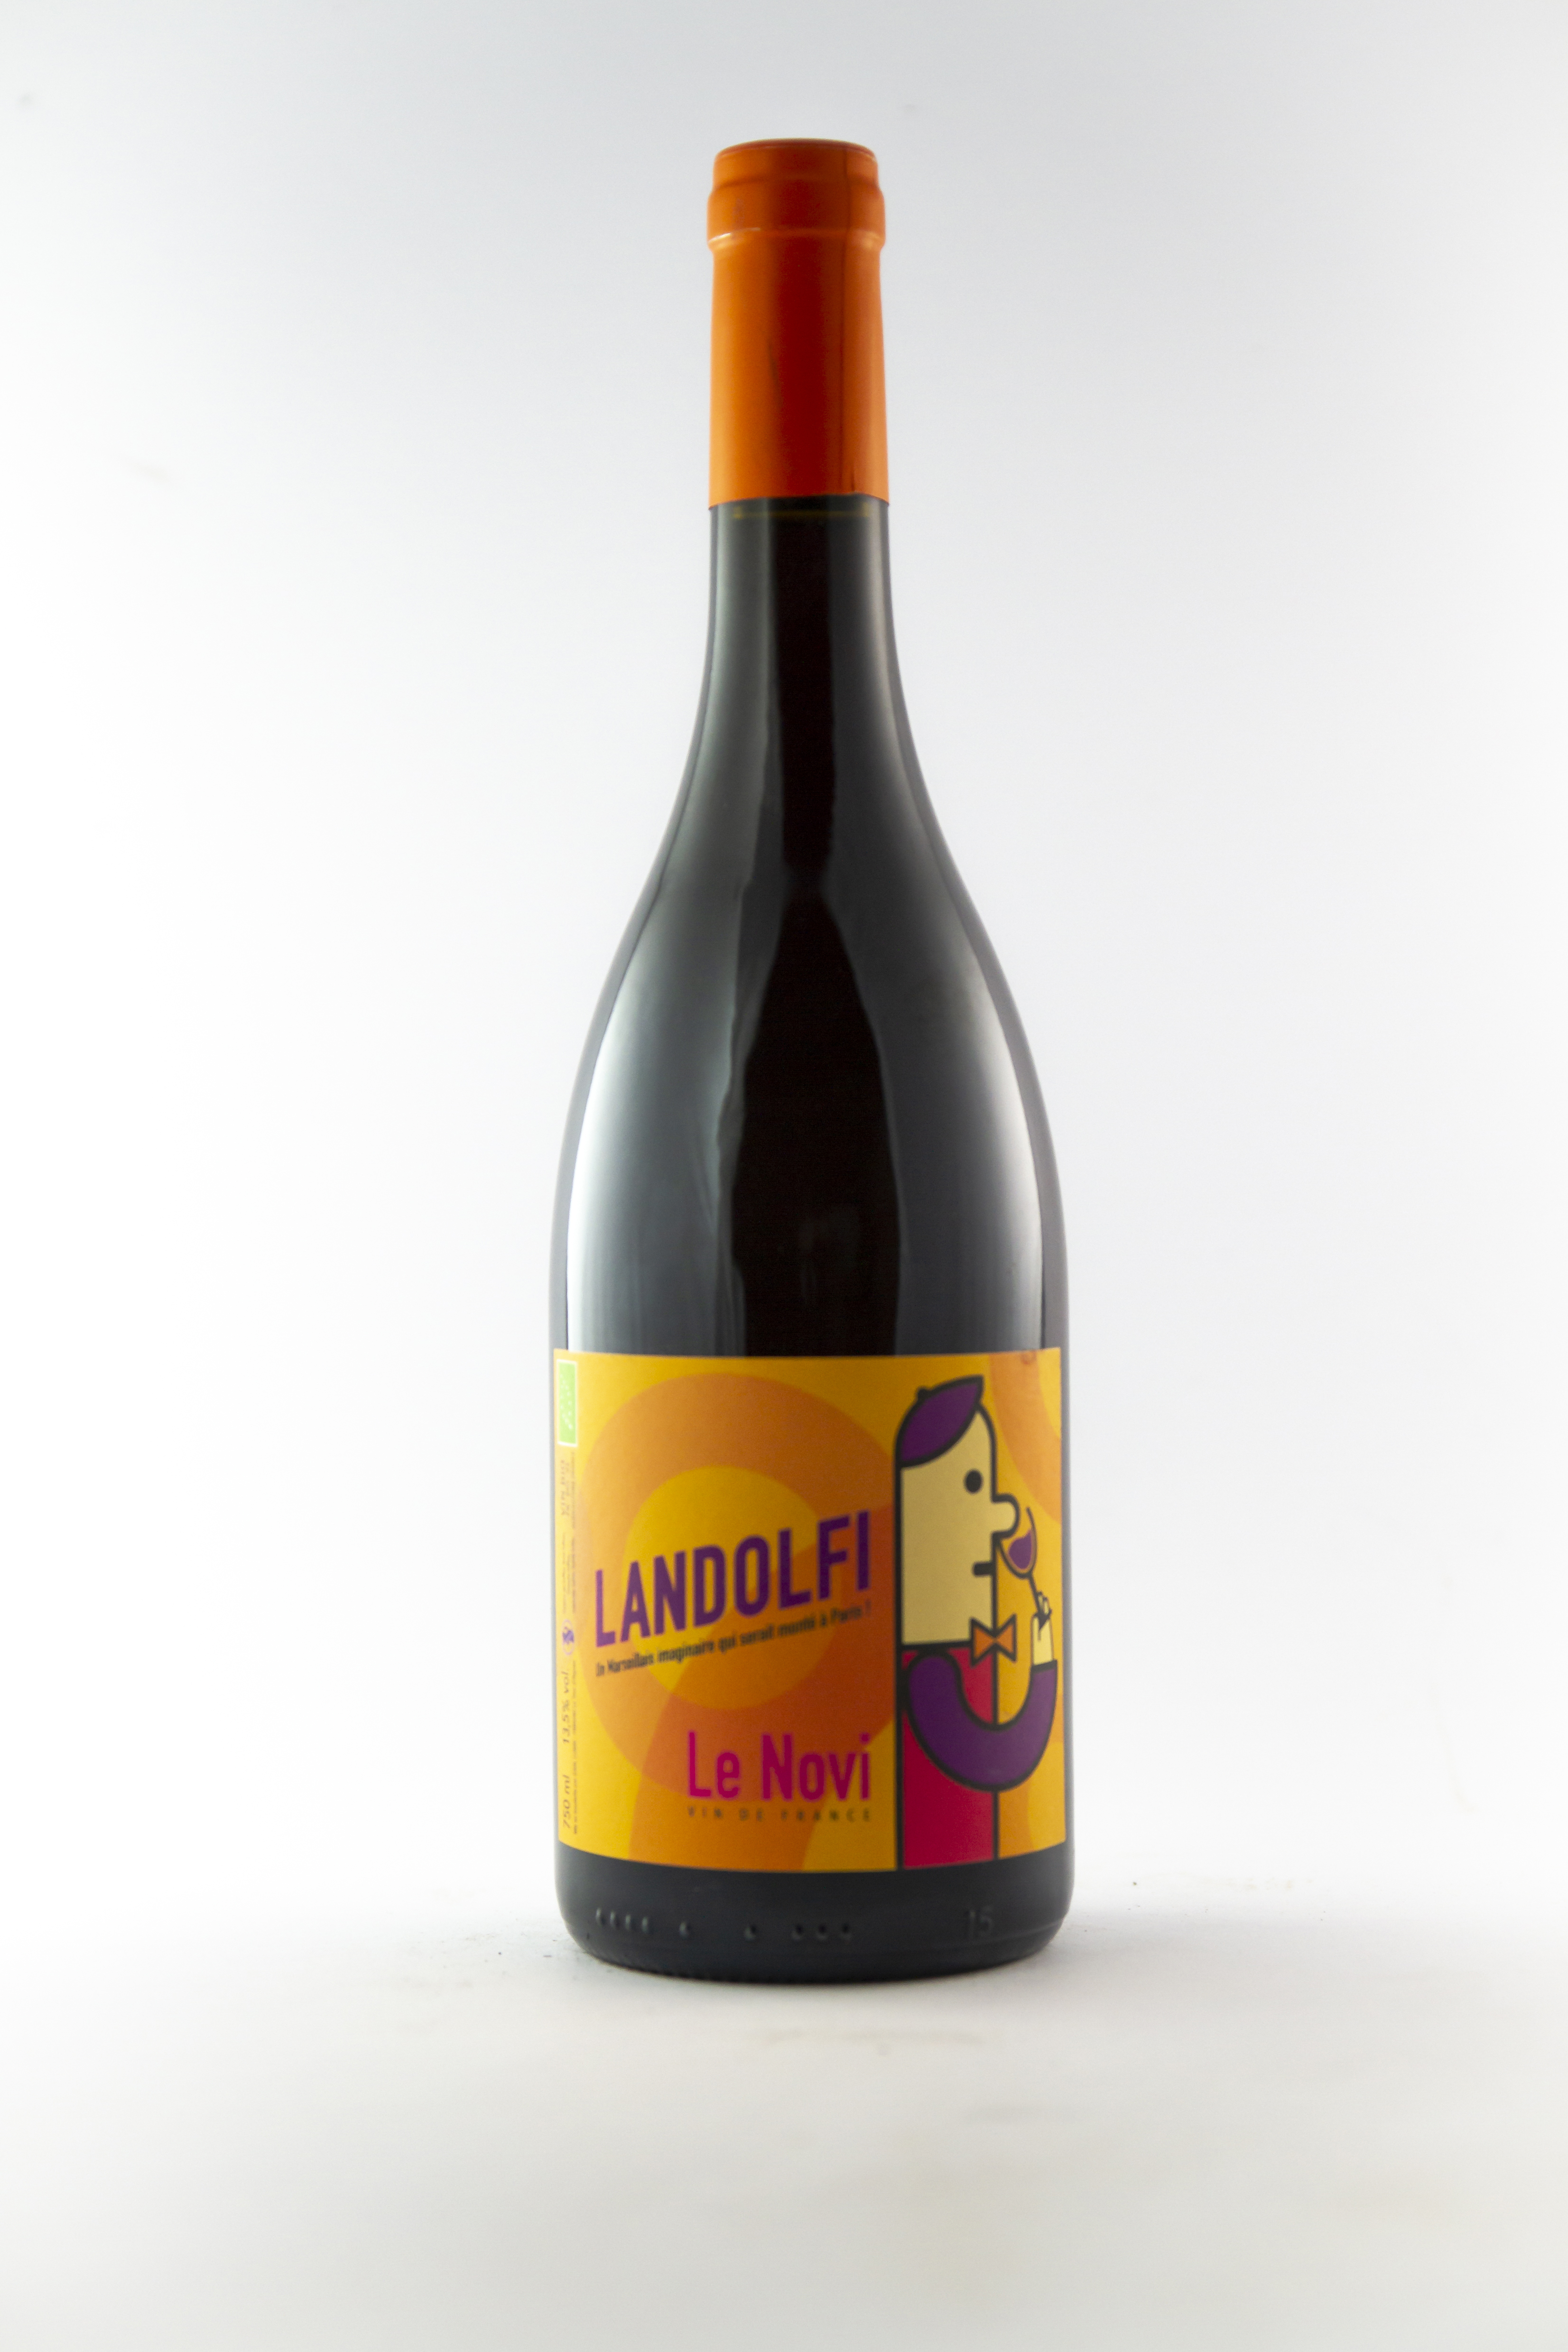 Vin de France Le Novi landolfi BIO 2020 75 cl Rouge